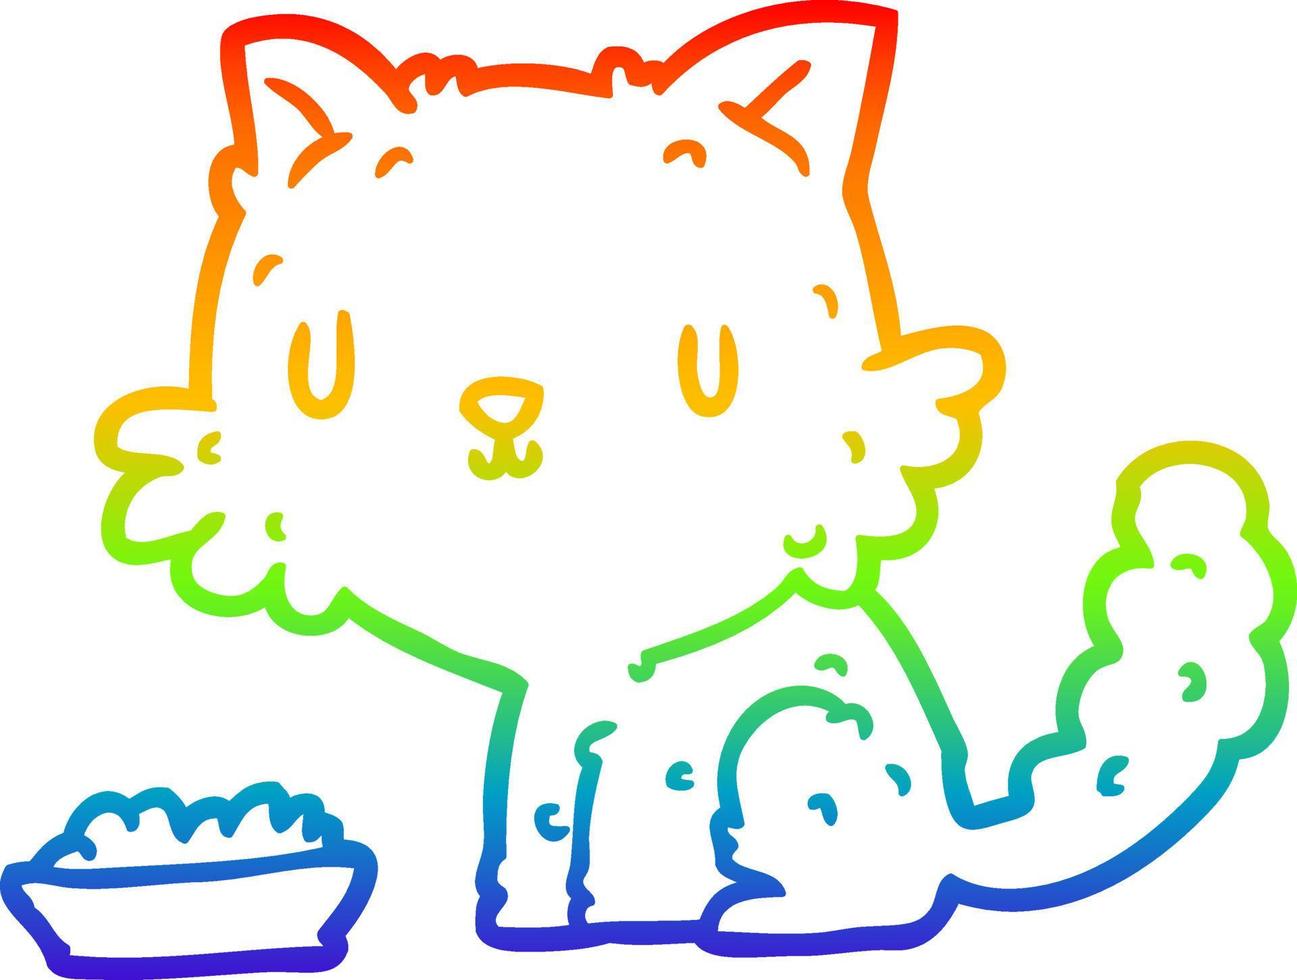 Regenbogen-Gradientenlinie zeichnet niedliche Cartoon-Katze und Essen vektor